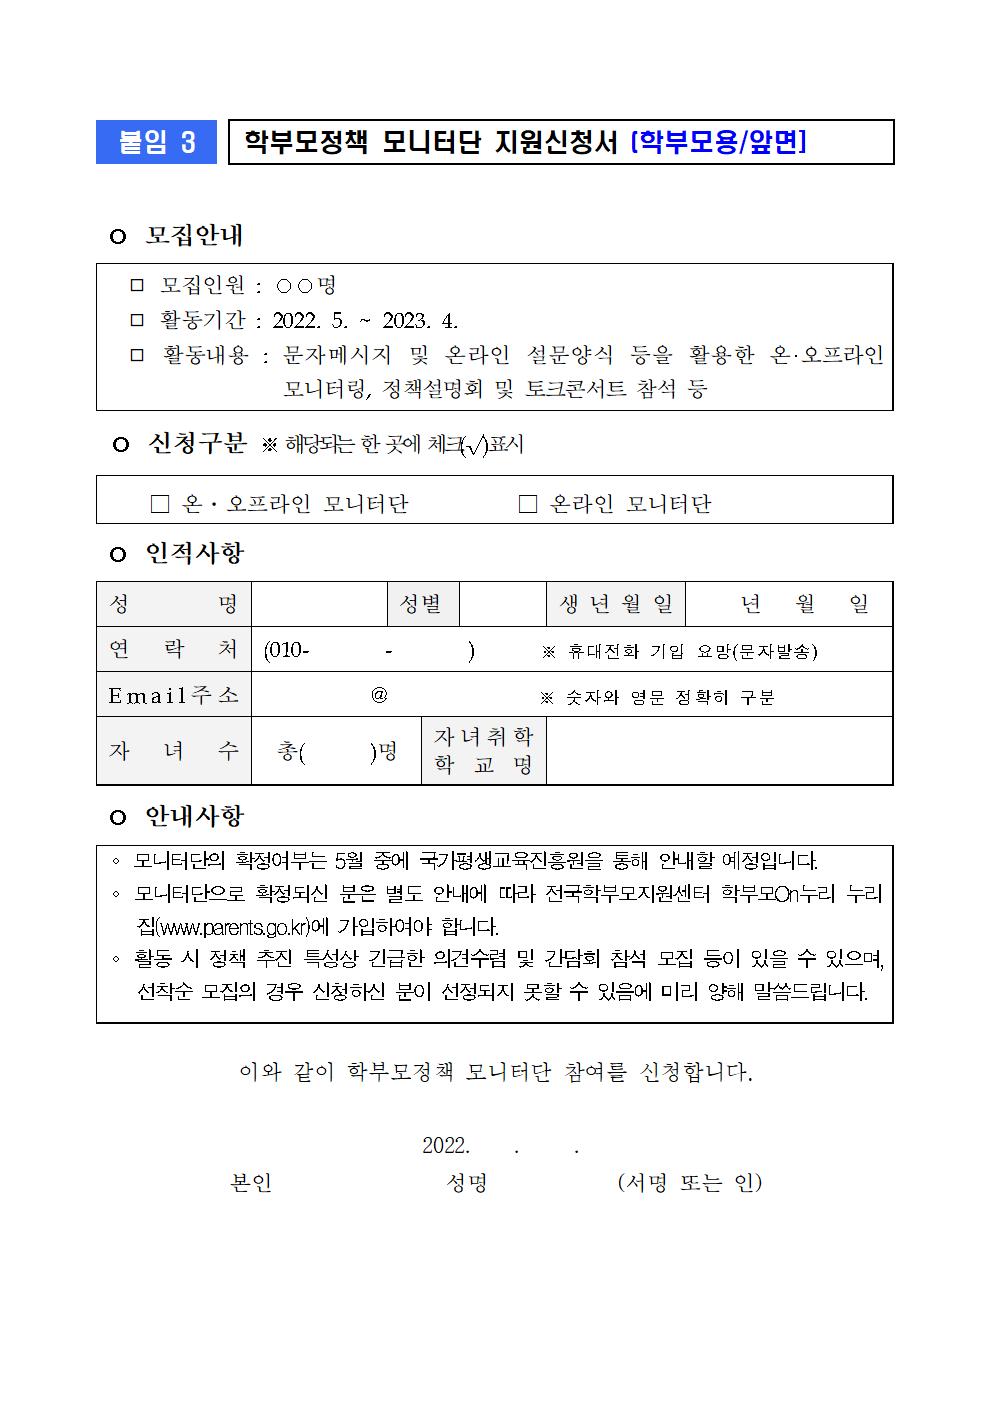 (붙임3) 모니터단 모집 관련 활용 서식(학교용)002